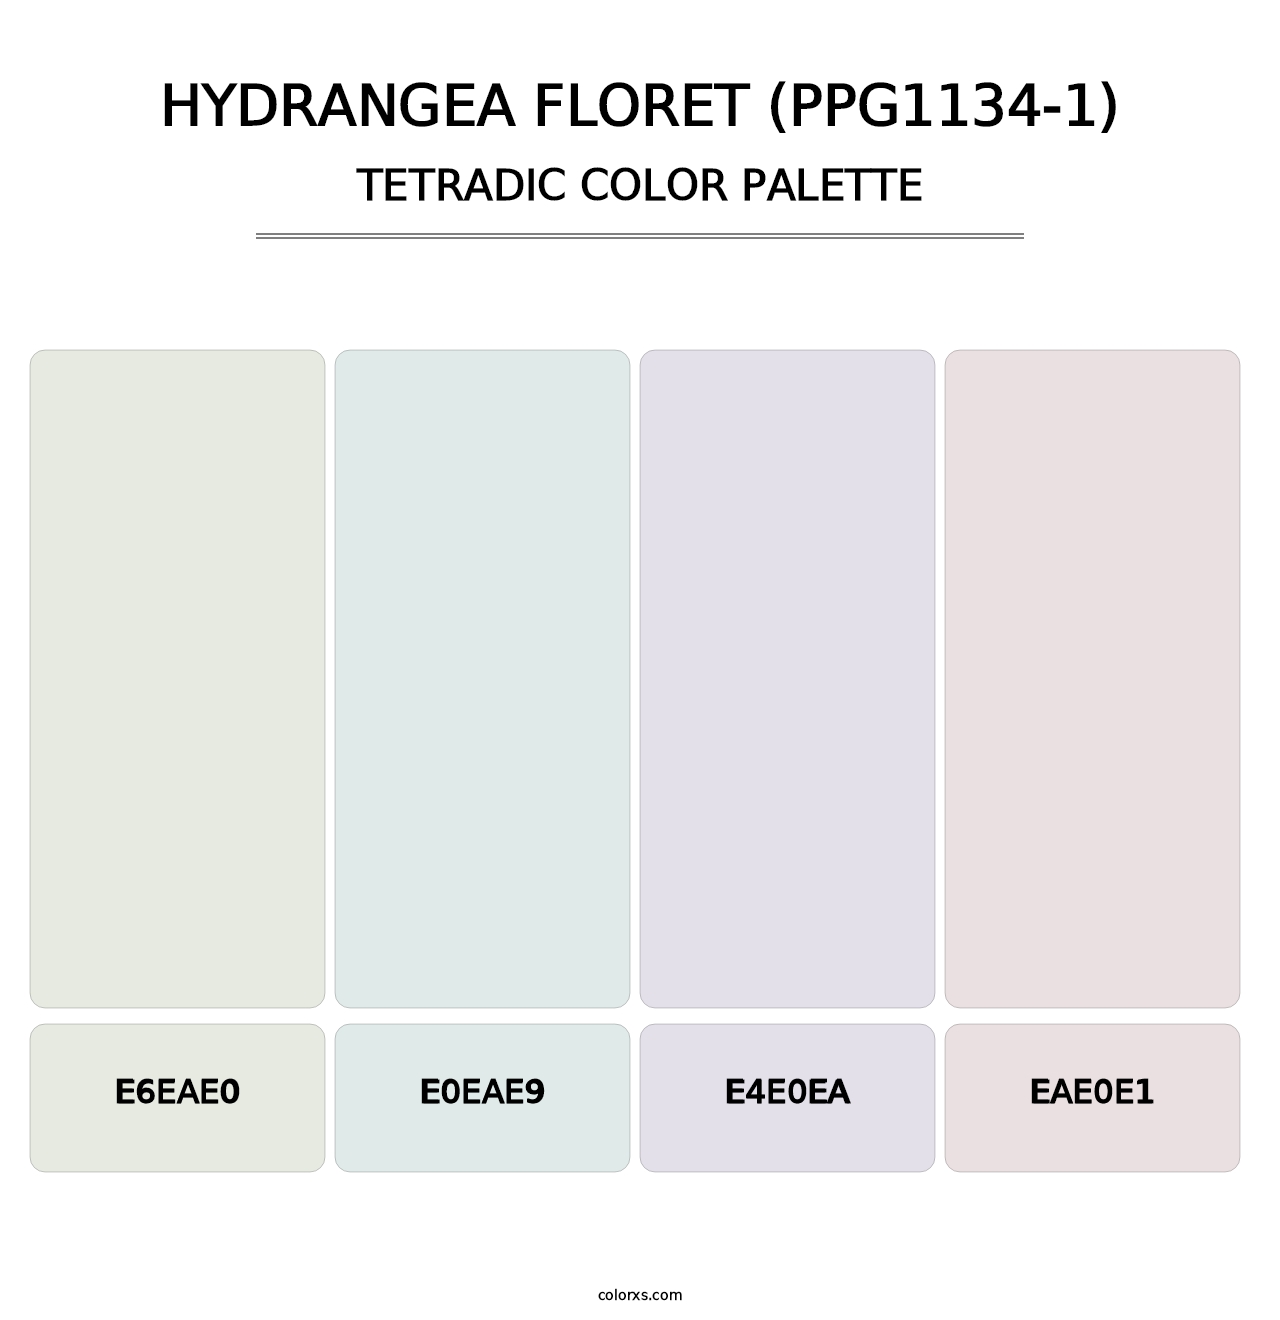 Hydrangea Floret (PPG1134-1) - Tetradic Color Palette